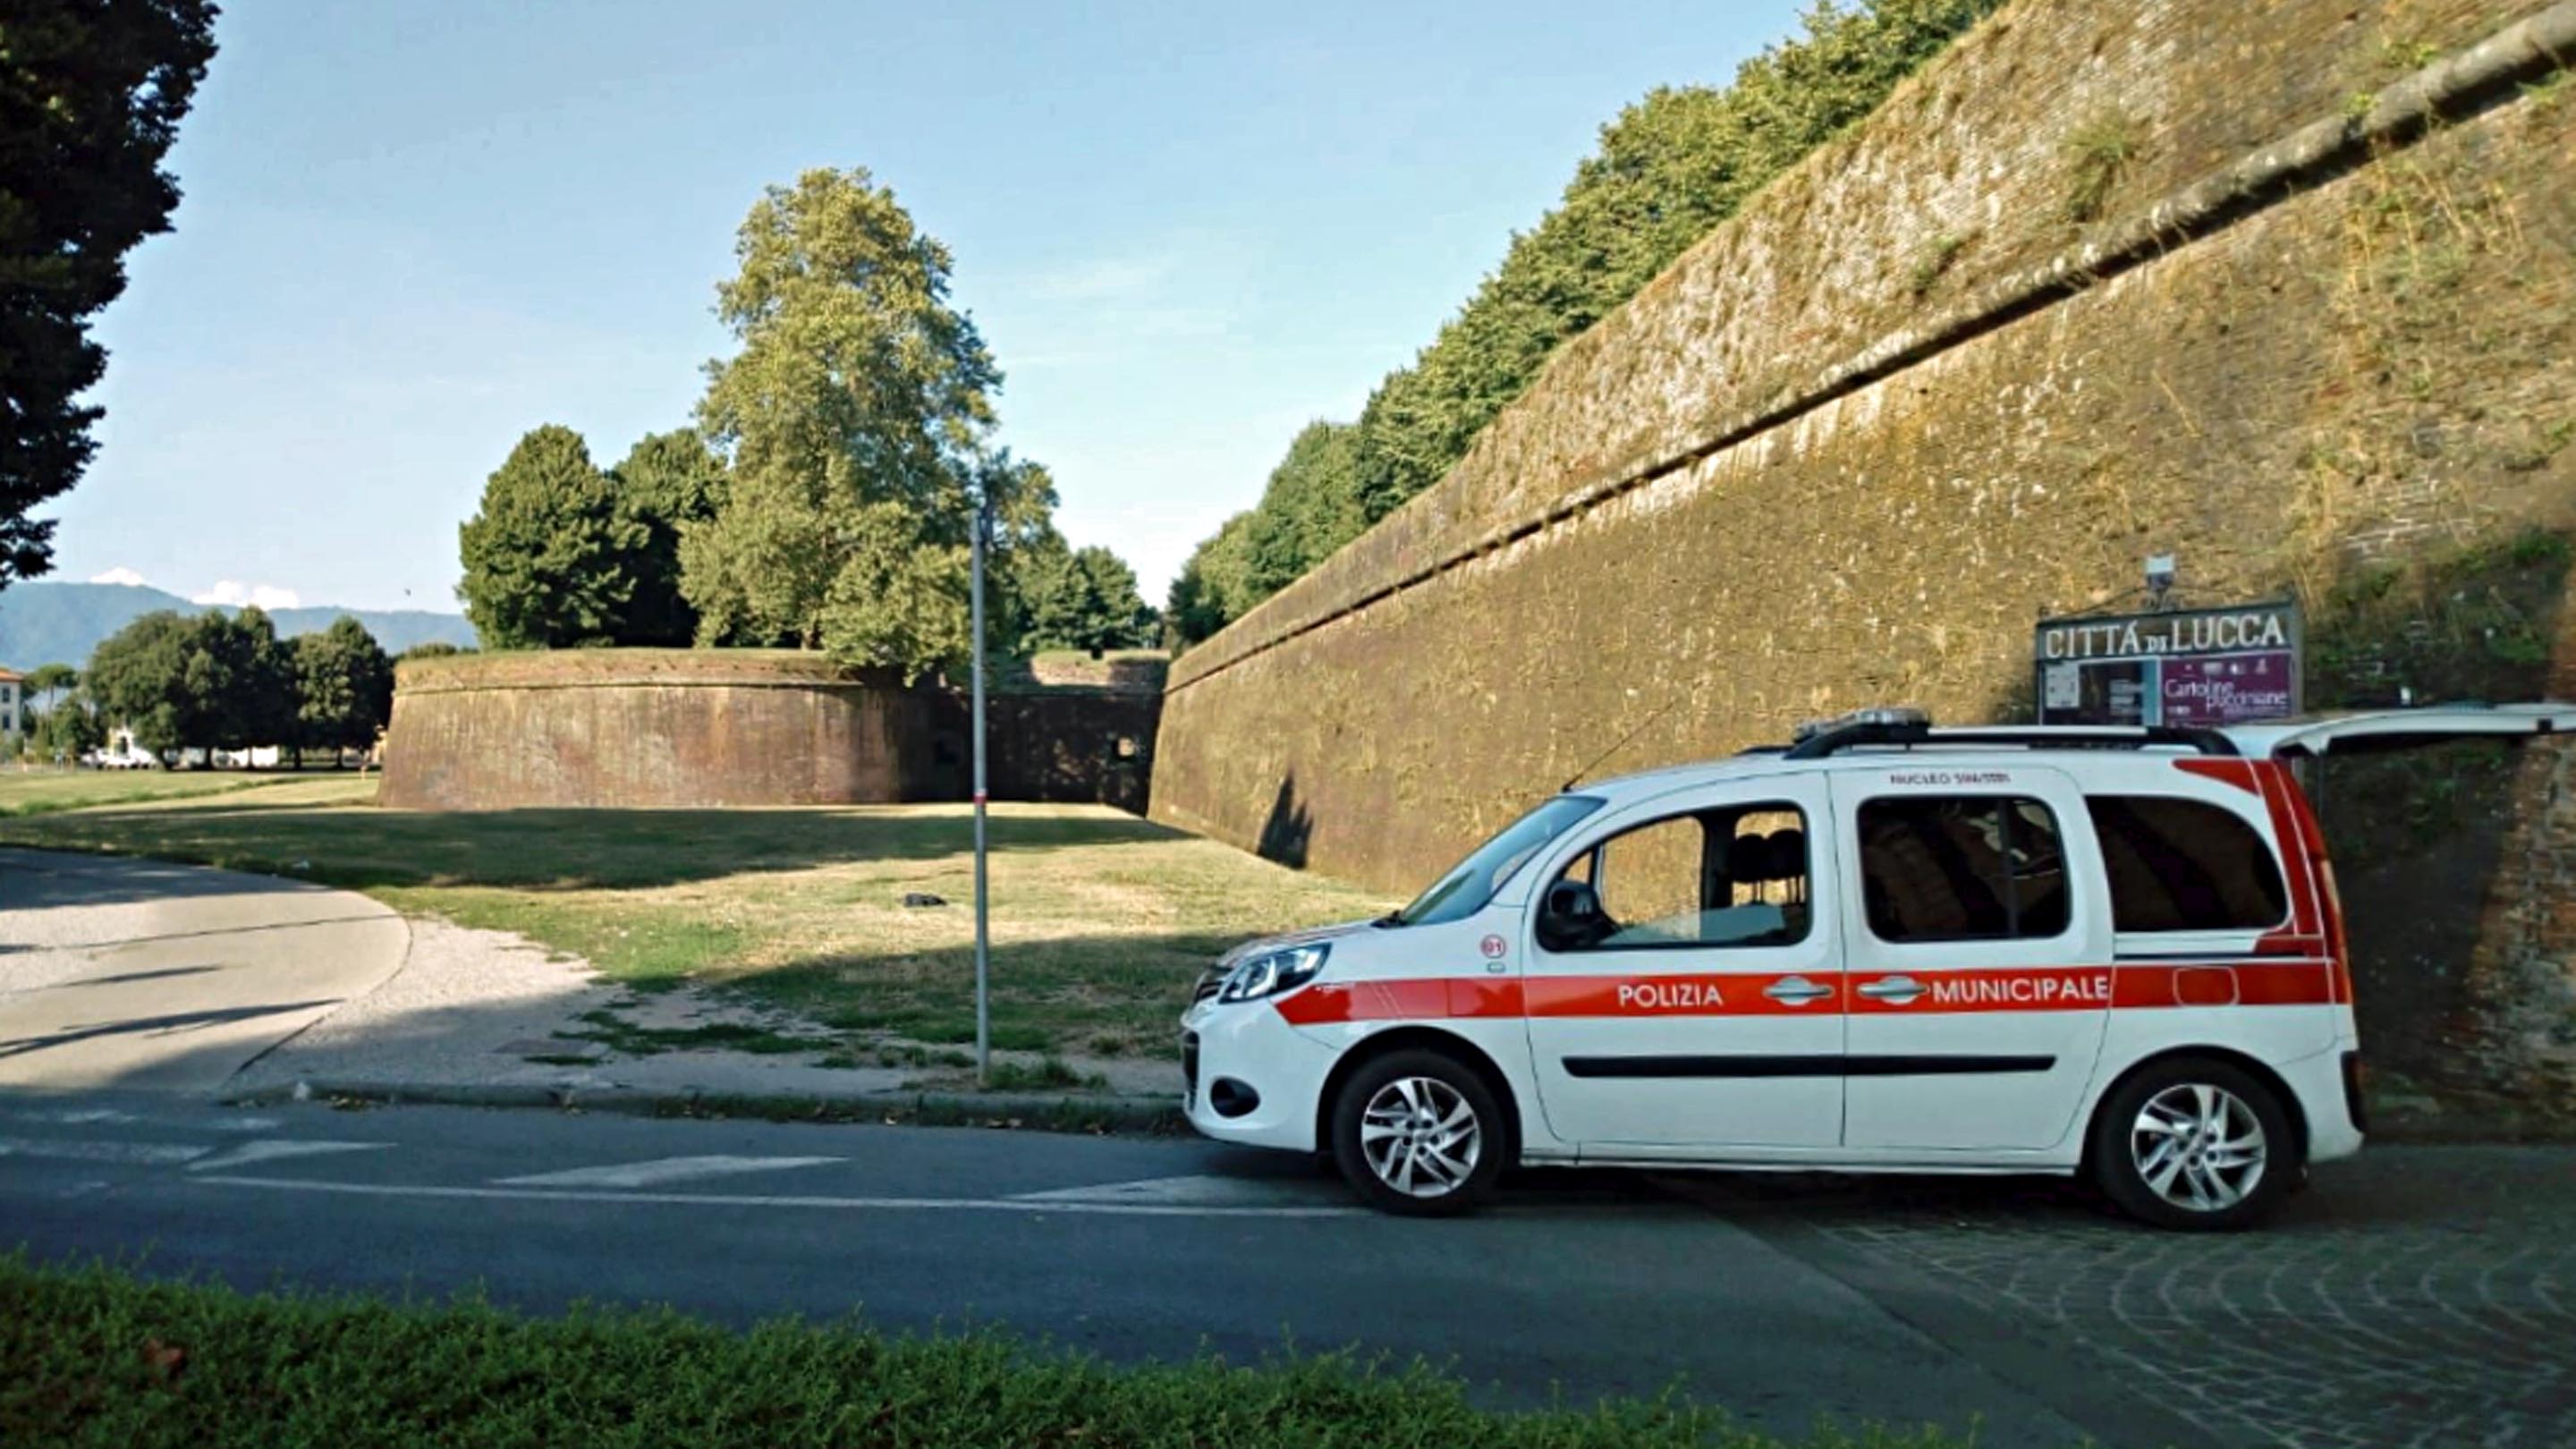 Turista olandese, seduto sotto le mura, muore schiacciato da furgone